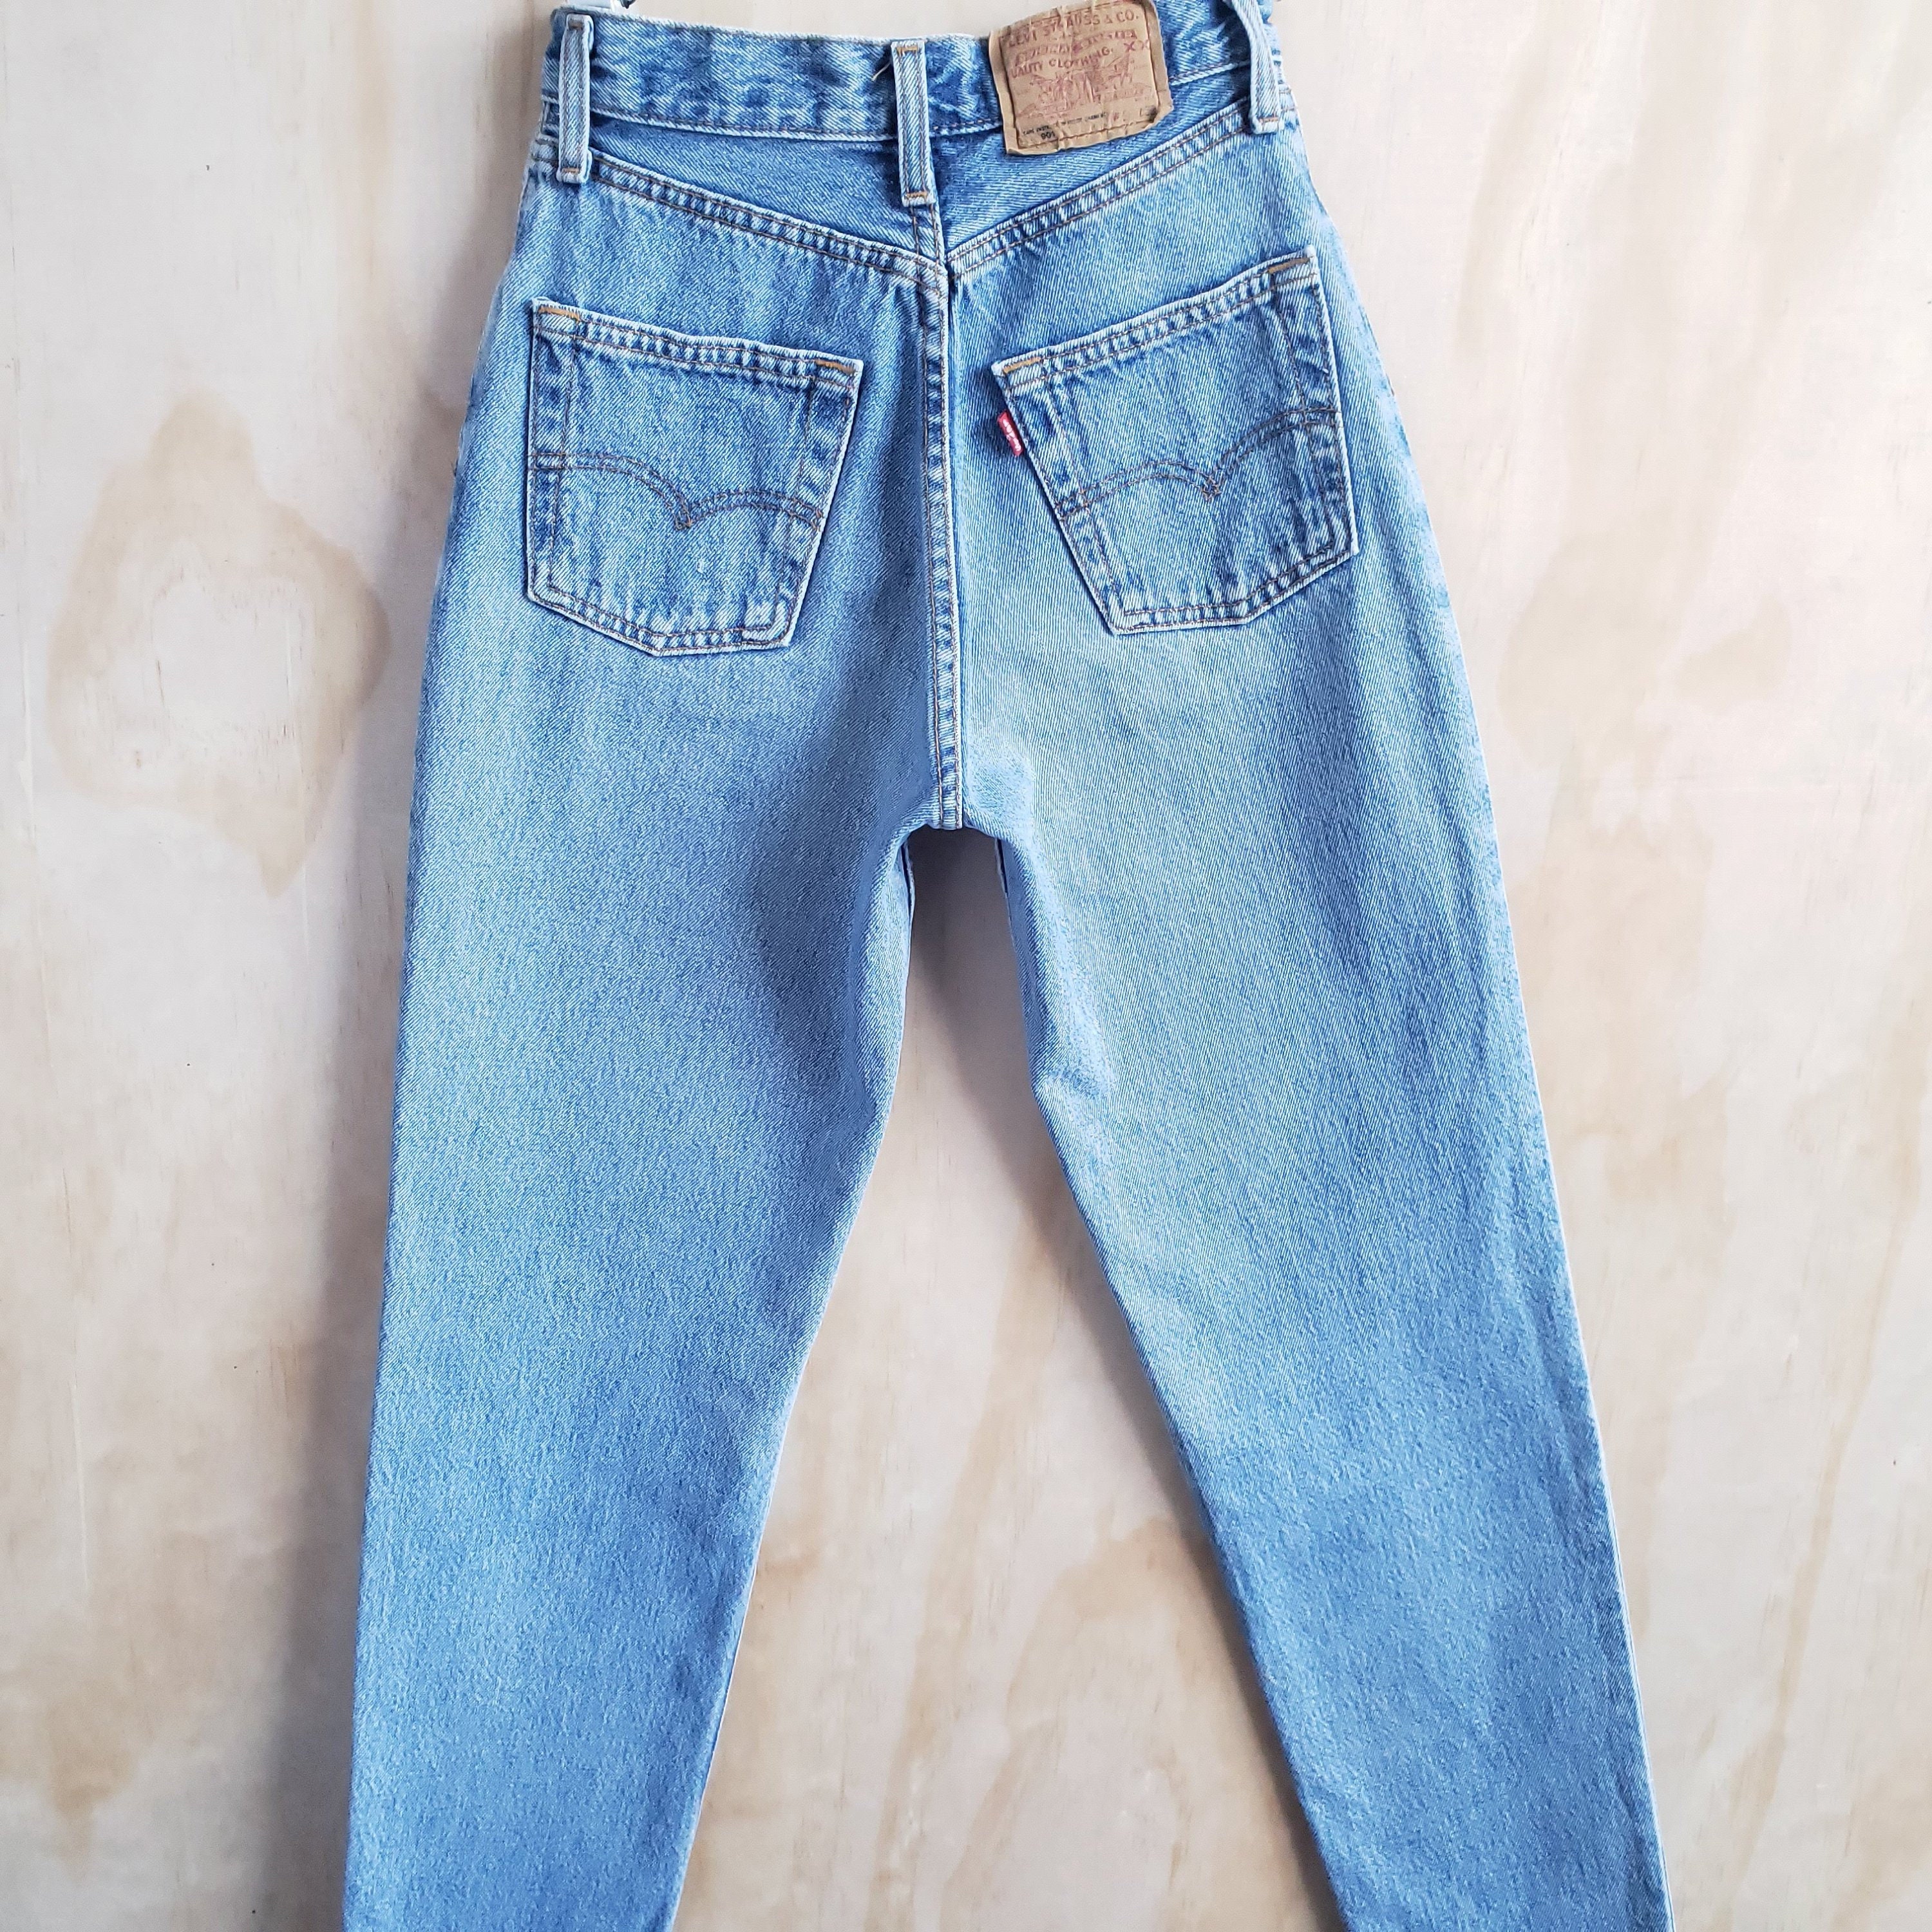 levis jeans 901